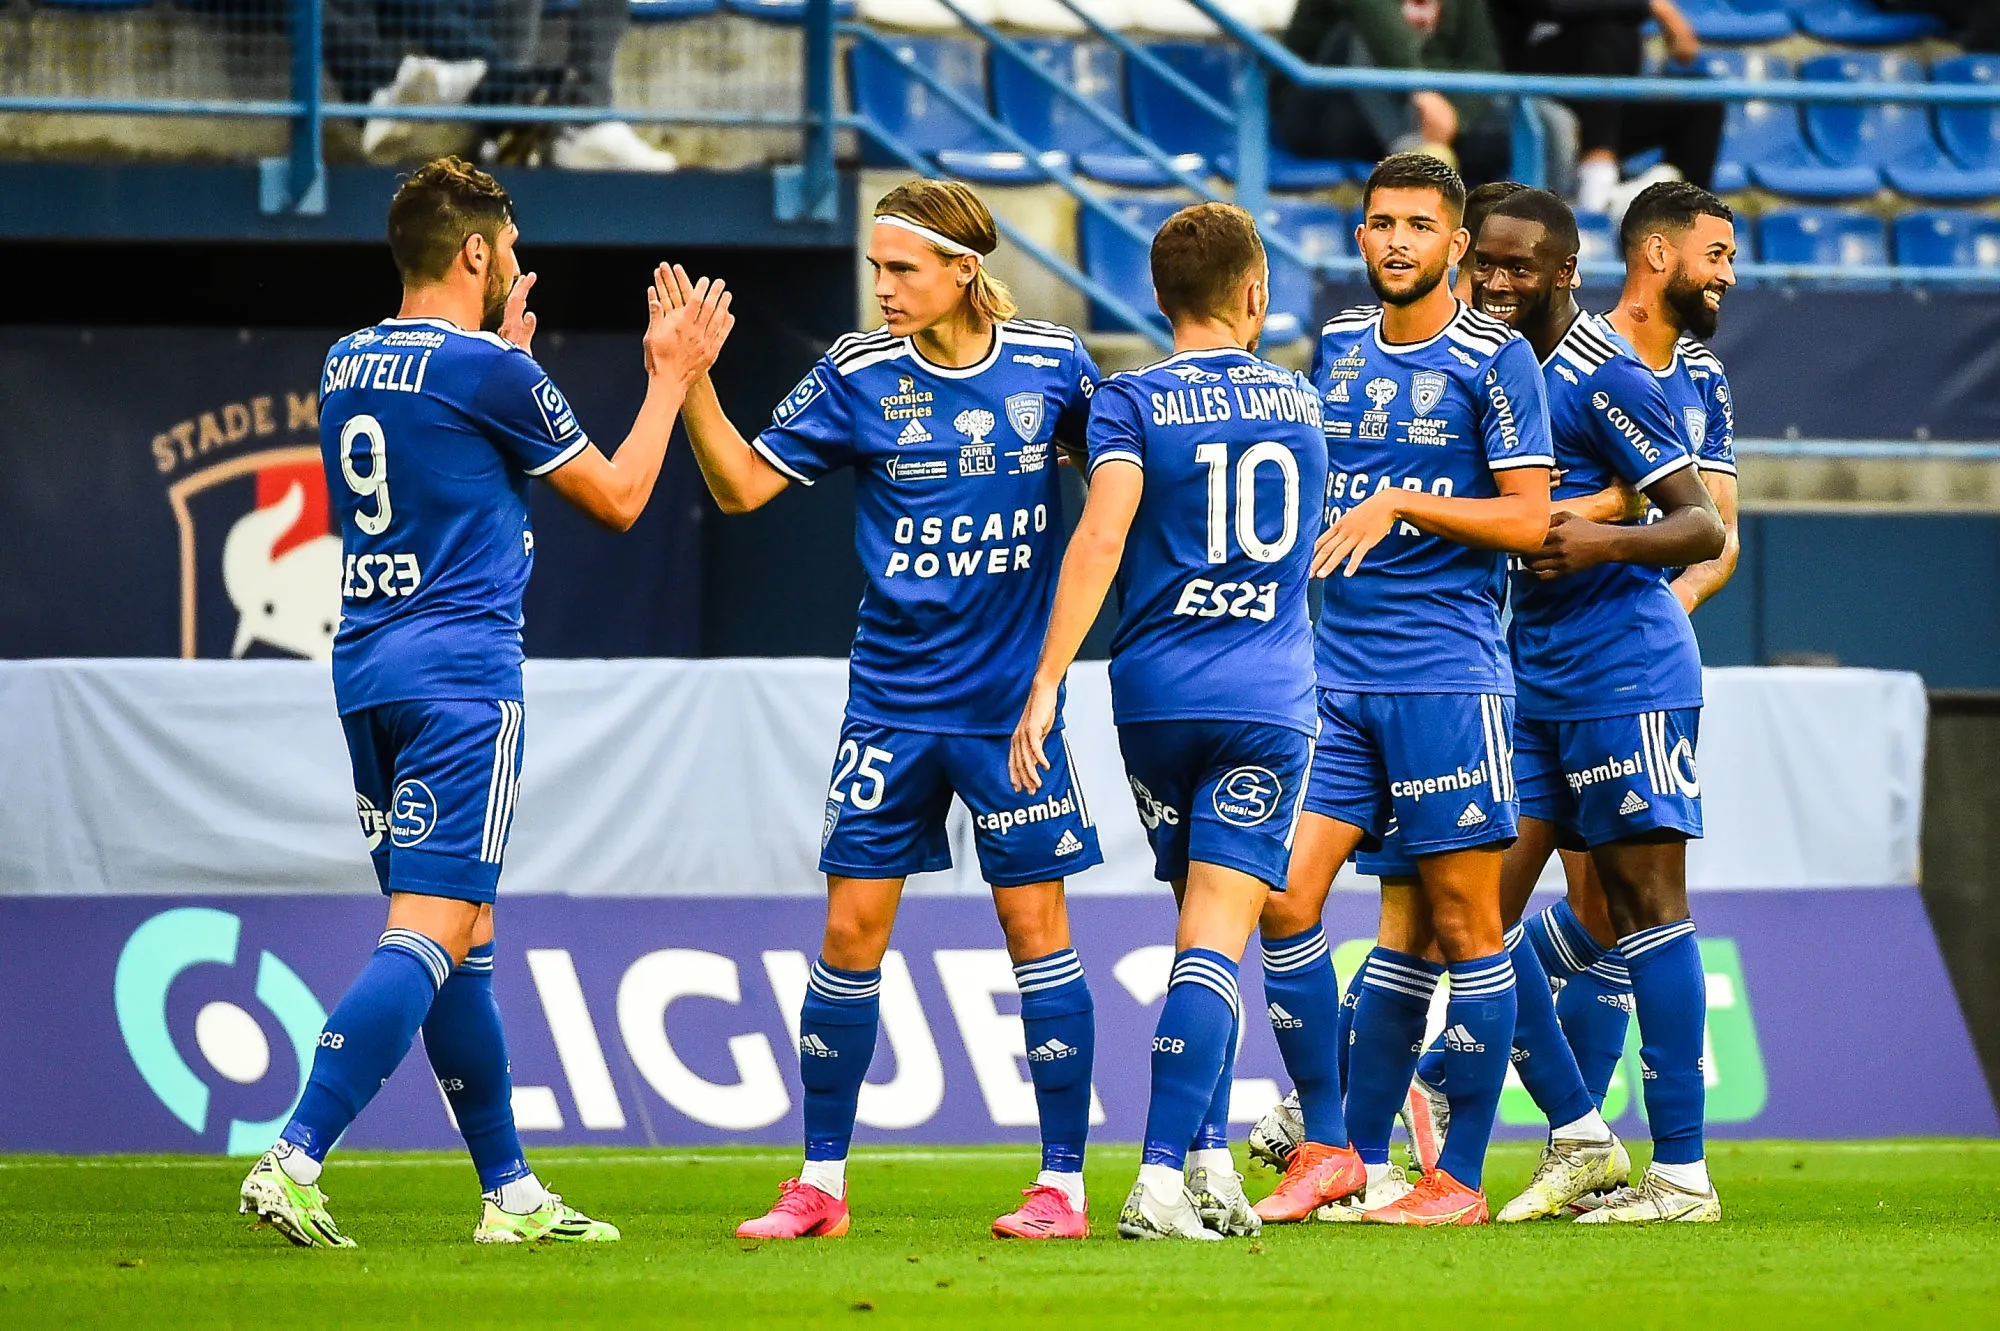 Pronostic Bastia Caen : Analyse, cotes et prono du match de Ligue 2